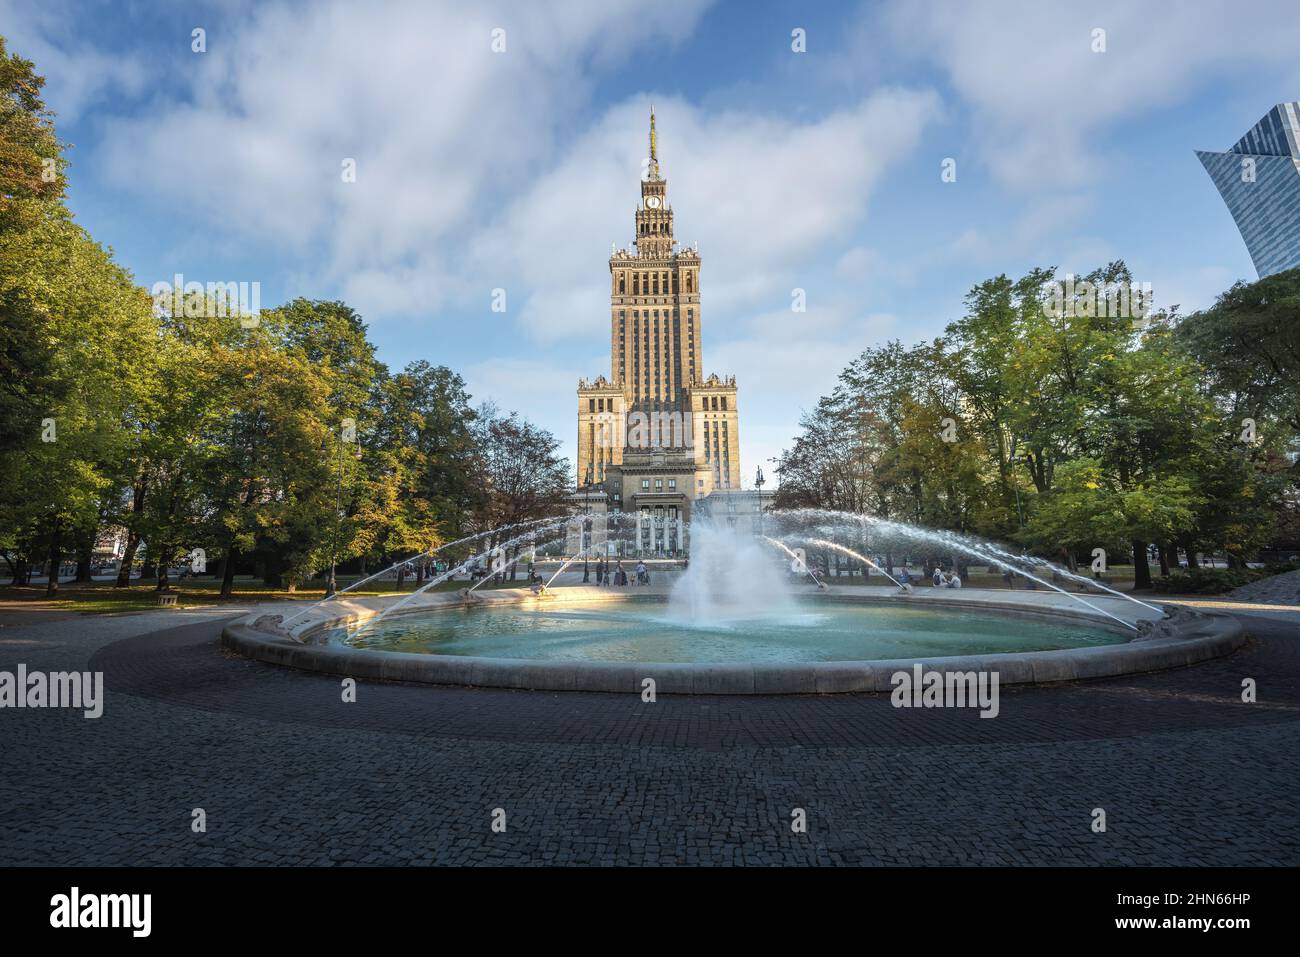 Palast der Kultur und Wissenschaft und Brunnen des Swietokrzyski Parks - Warschau, Polen Stockfoto